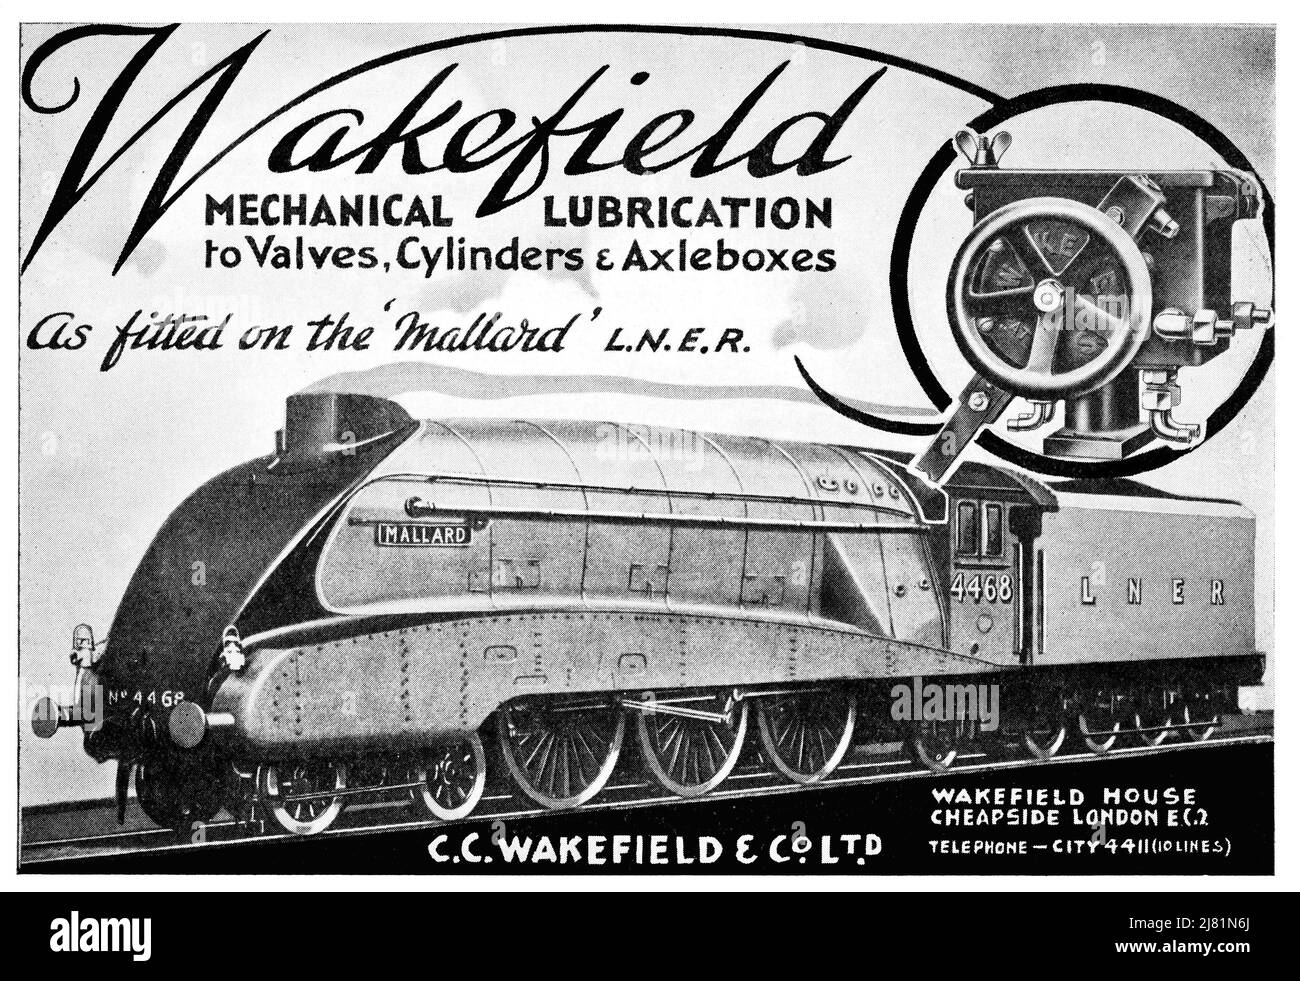 Un annuncio vintage del 1938 per le attrezzature di lubrificazione meccanica del posto del vapore ferroviario di Wakefield, come montato sulla locomotiva LNER Mallard Foto Stock